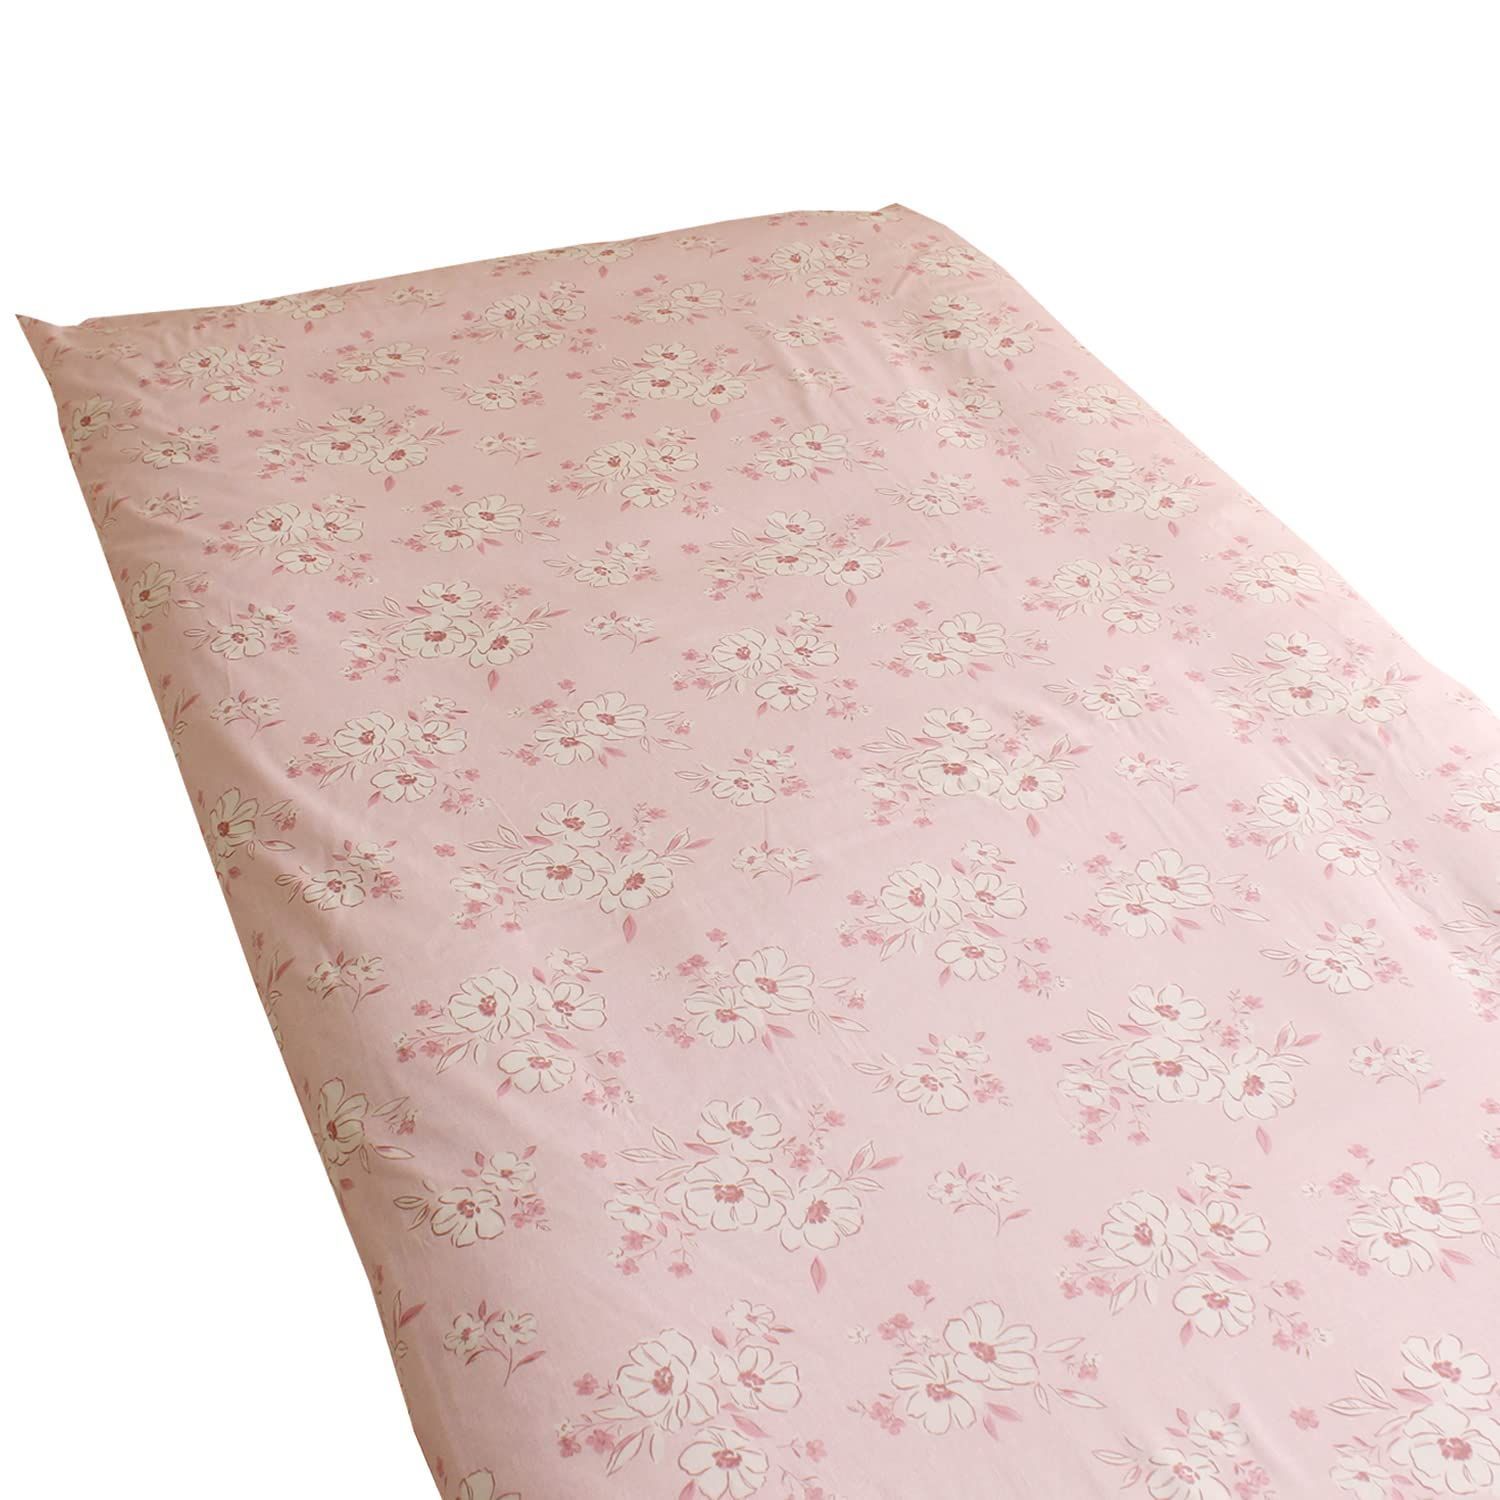 メリーナイト 敷き布団カバー 「アネモネ」 ピンク シングル 約105×205cm 綿100% 吸湿性 通気性 心地よい肌触り オールシーズン 洗える  CT13013-16 - メルカリ